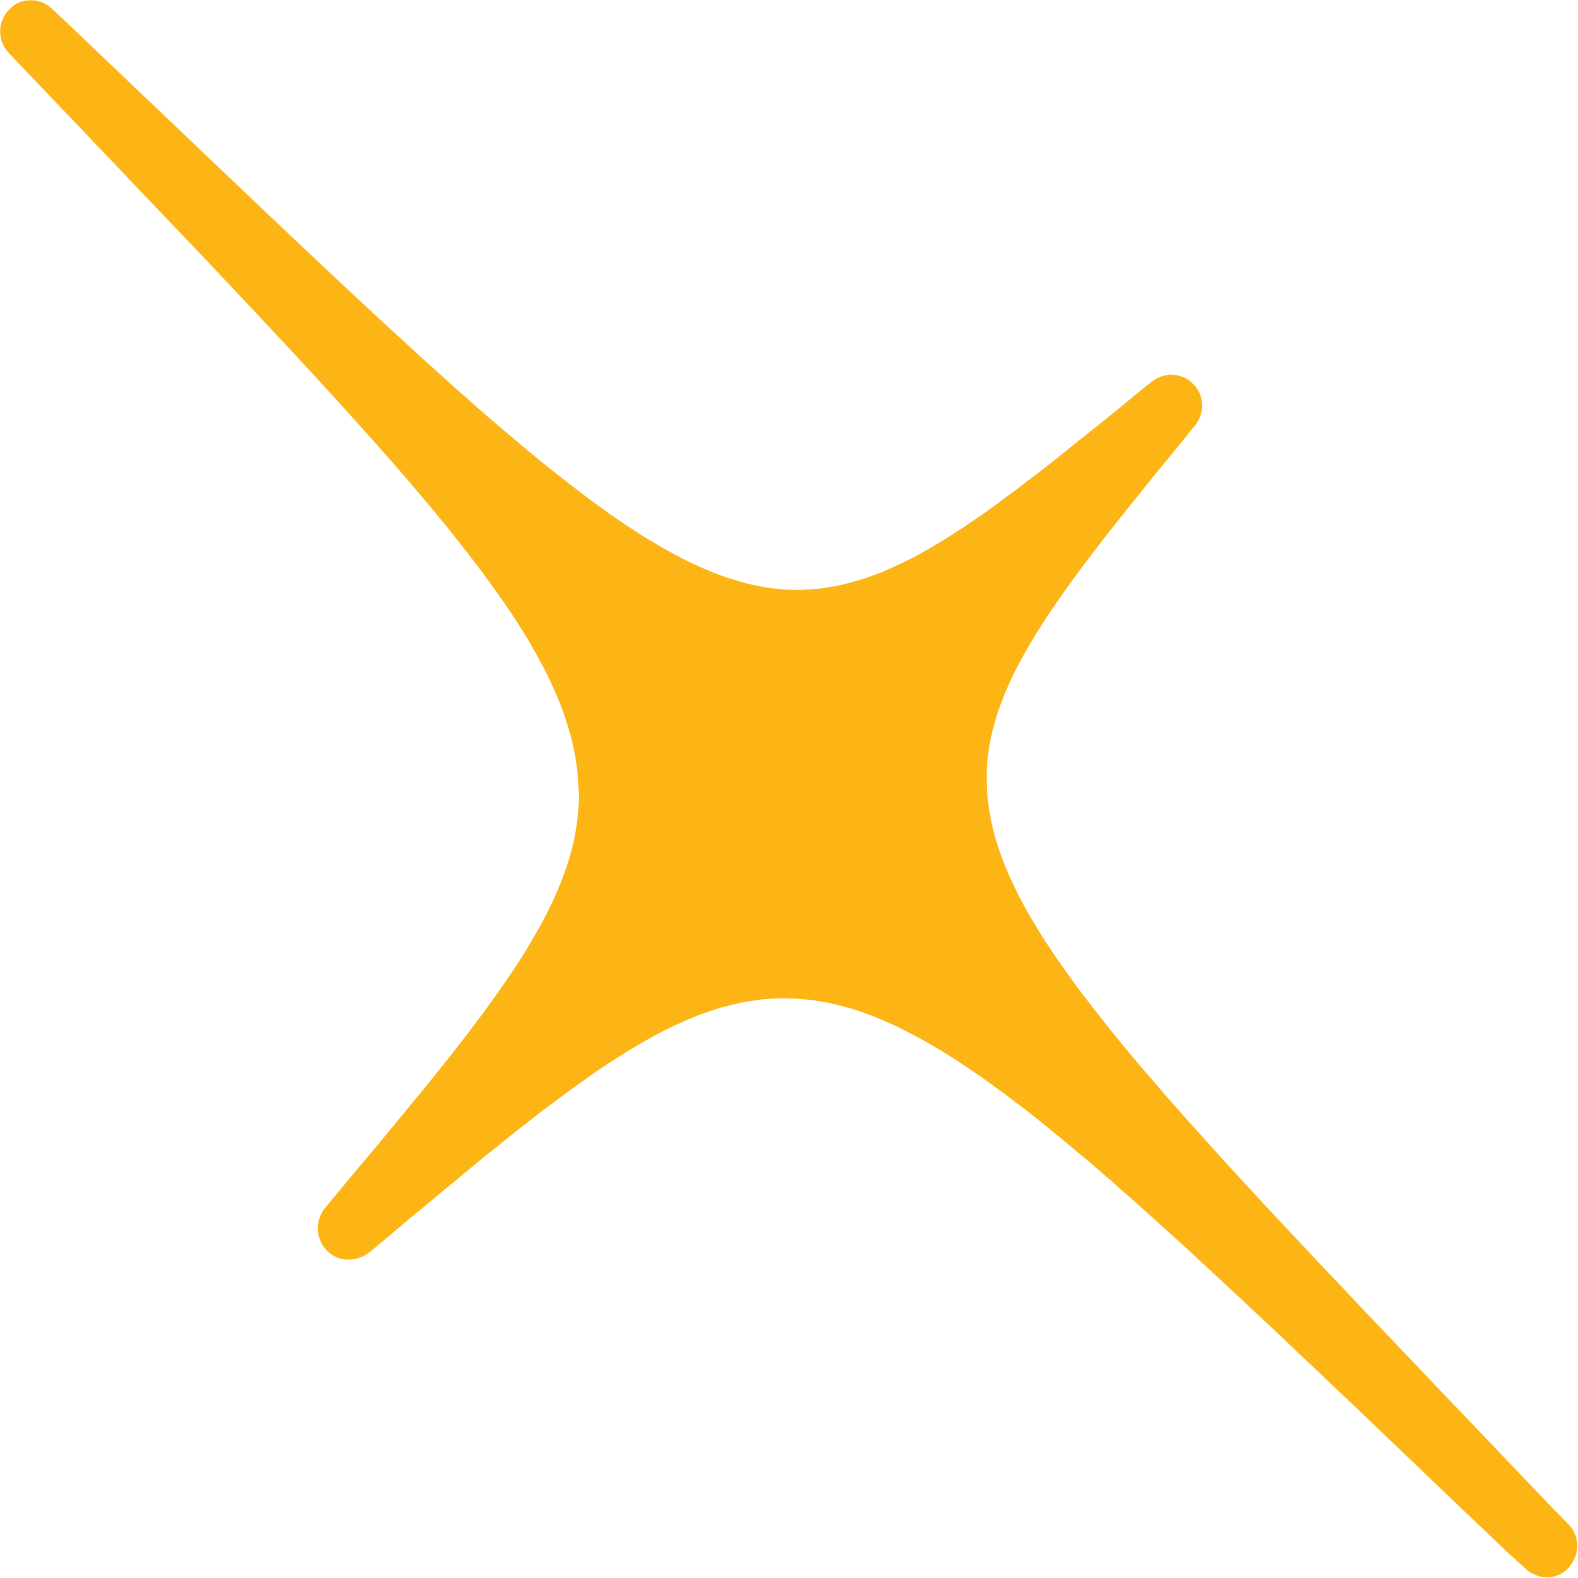 Nexters logo (PNG transparent)